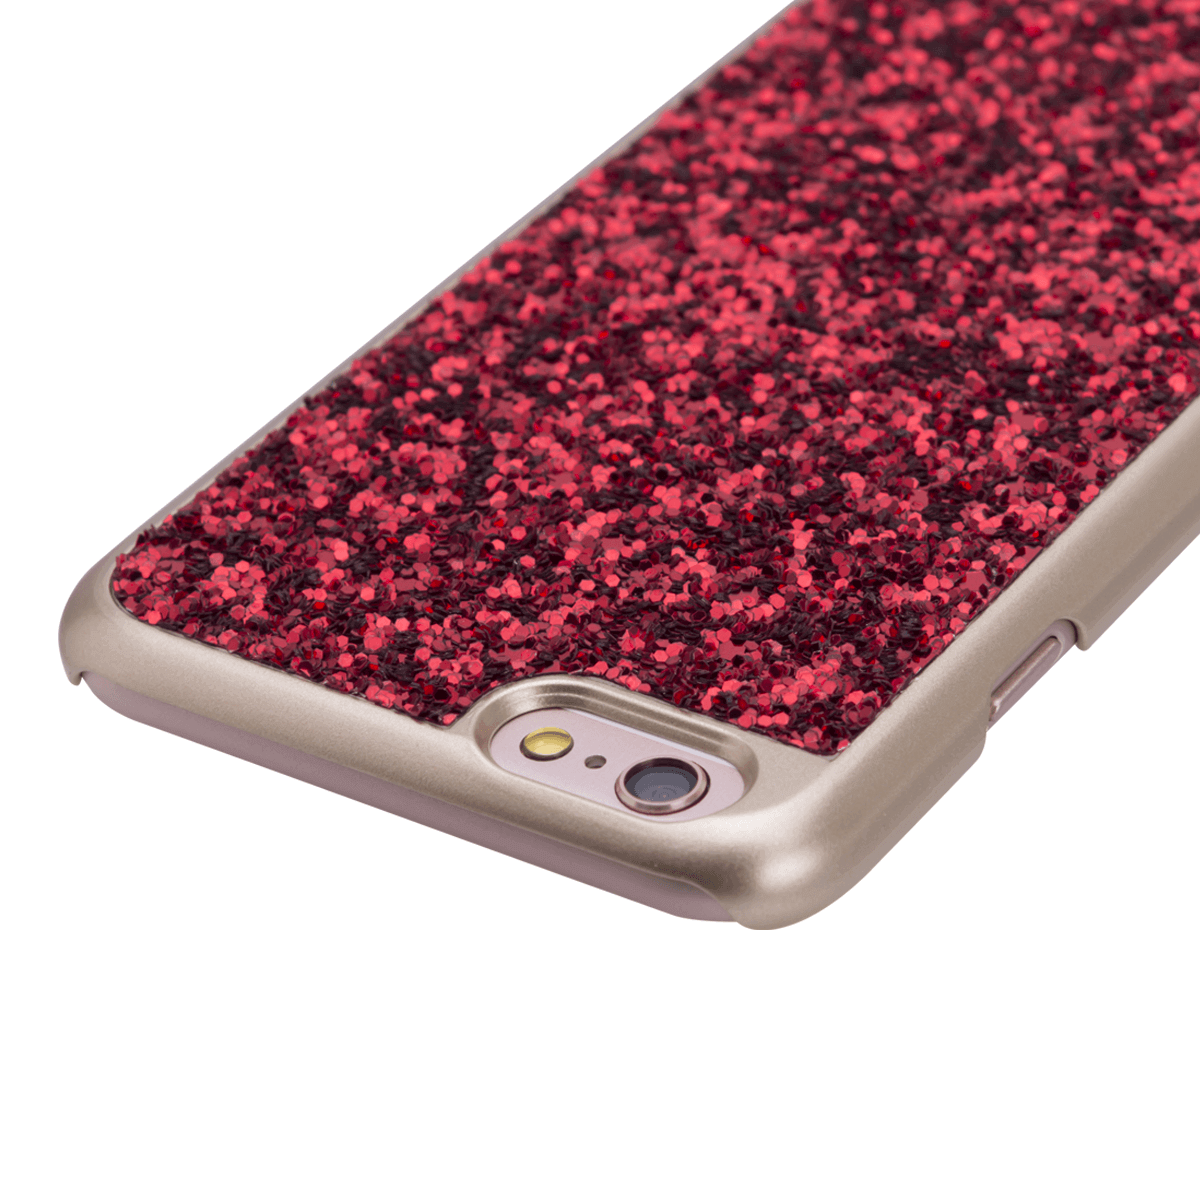 iPhone 6/6S Plus için spada Glitter Kırmızı renk Kapak